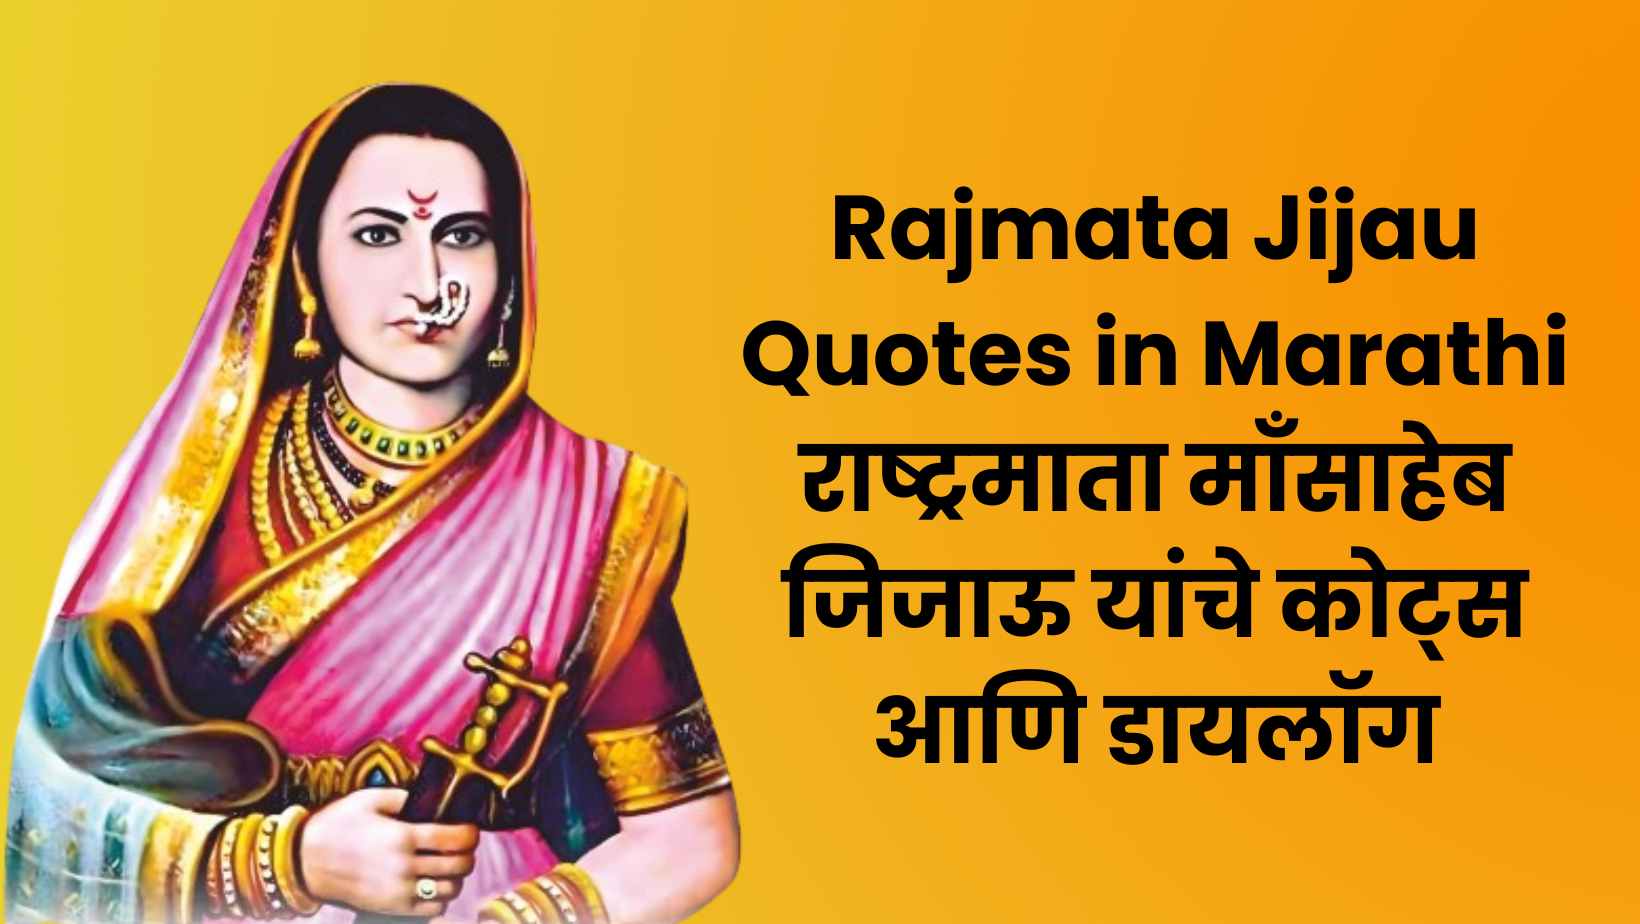 Rajmata Jijau Quotes in Marathi राष्ट्रमाता माँसाहेब जिजाऊ यांचे कोट्स आणि डायलॉग